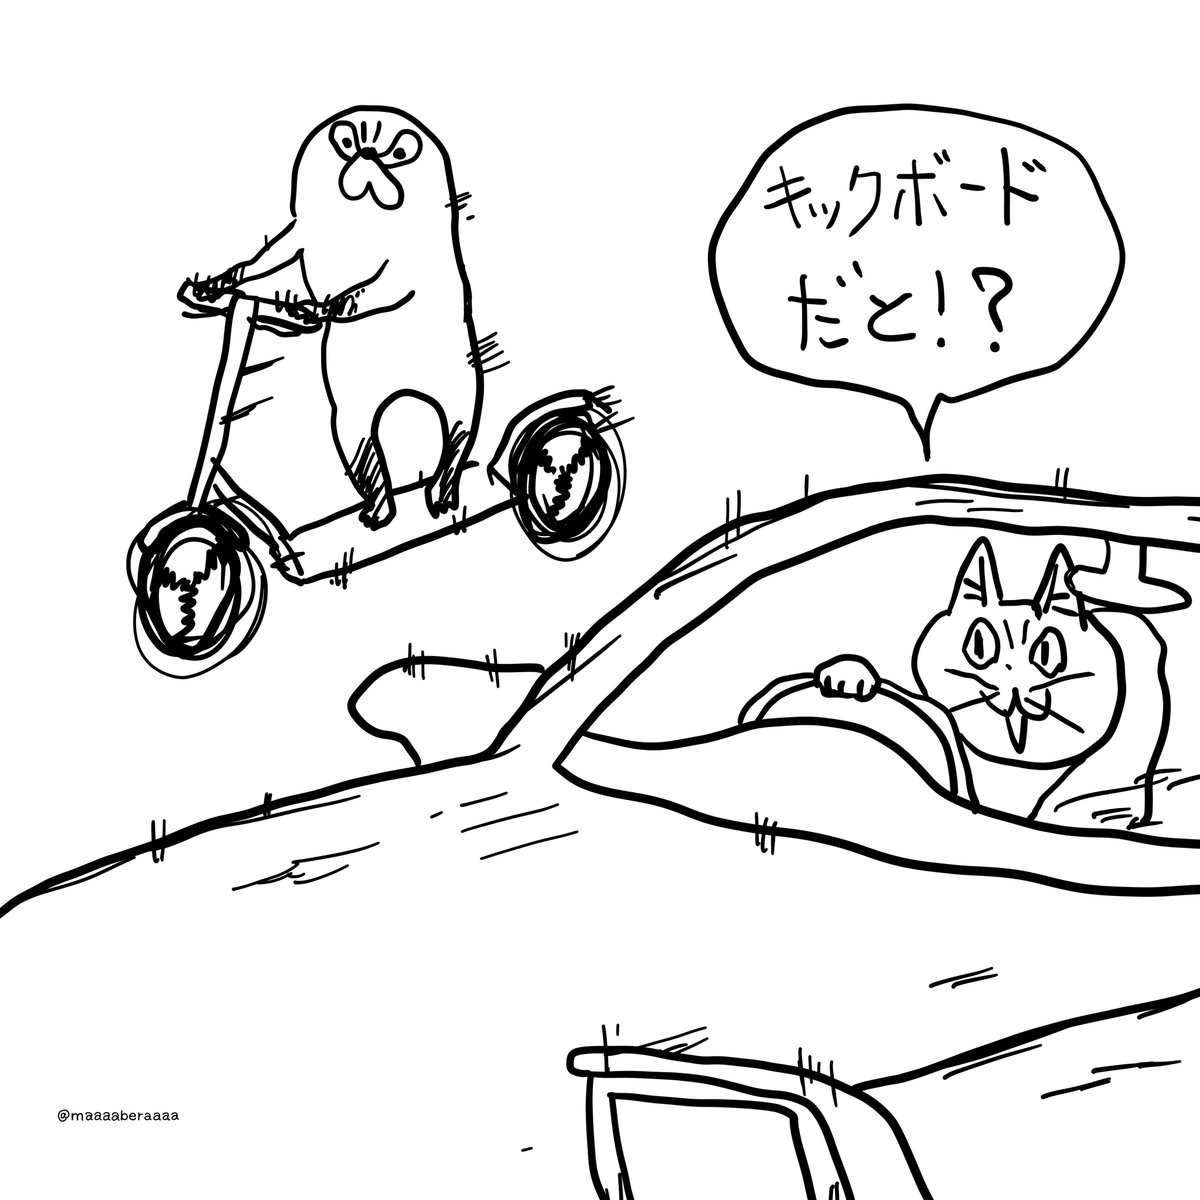 公道最速ムジーナ
#仕事猫 #ムジーナ #くまみね